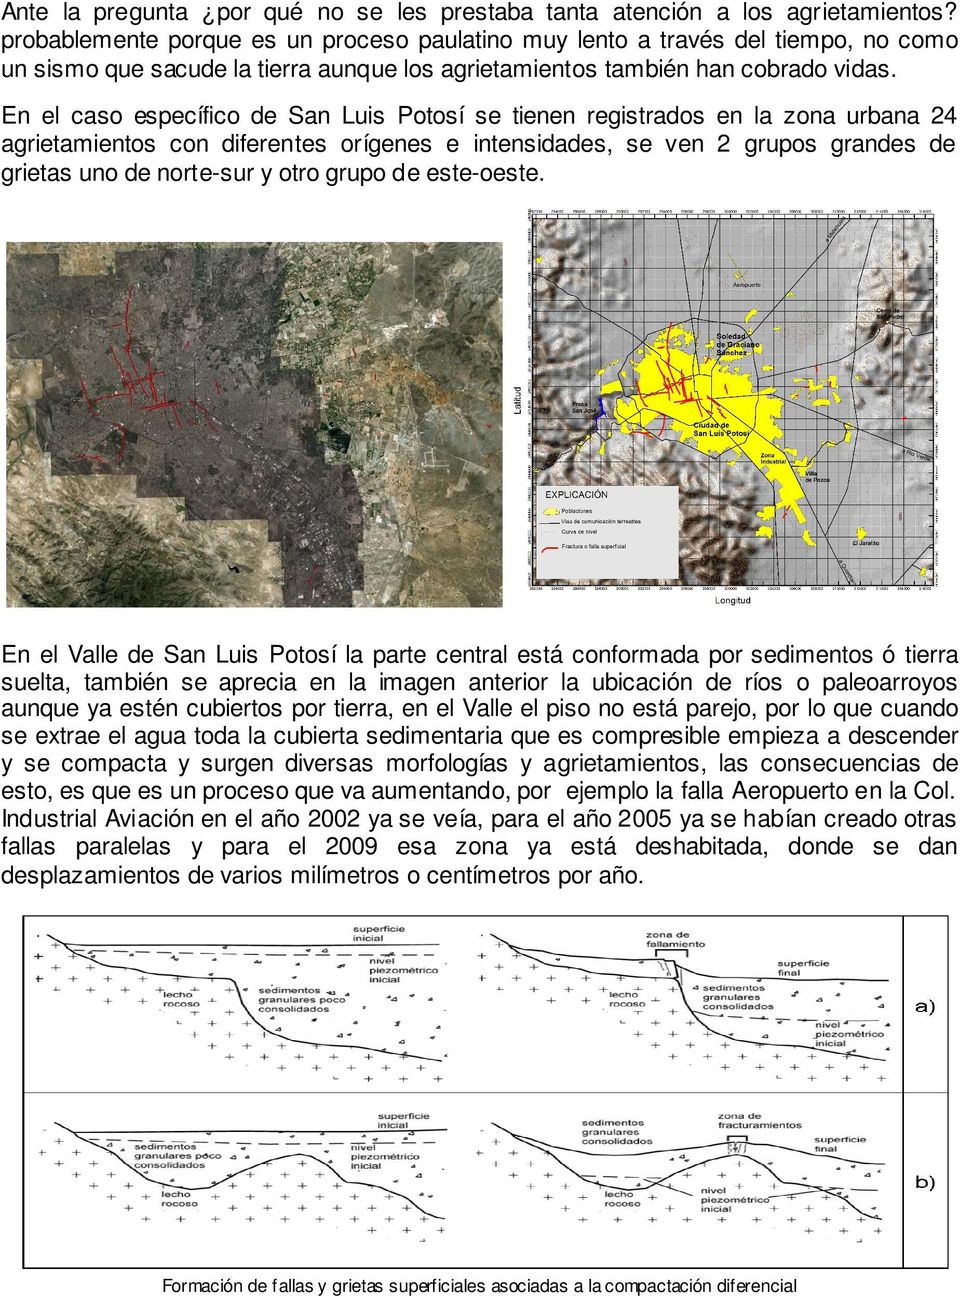 En el caso específico de San Luis Potosí se tienen registrados en la zona urbana 24 agrietamientos con diferentes orígenes e intensidades, se ven 2 grupos grandes de grietas uno de norte-sur y otro